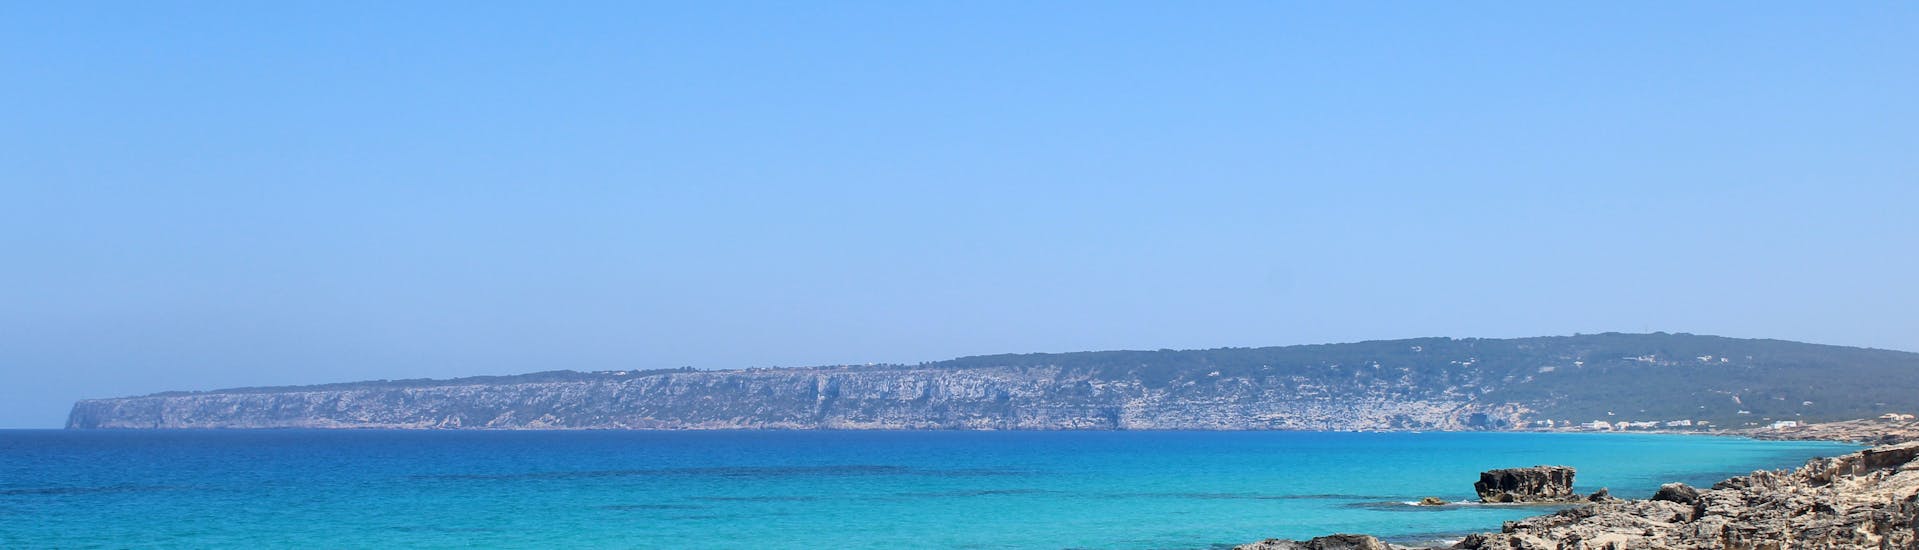 Vistas que se pueden ver en Formentera desde una clase de SUP yoga con Wet4Fun Formentera.